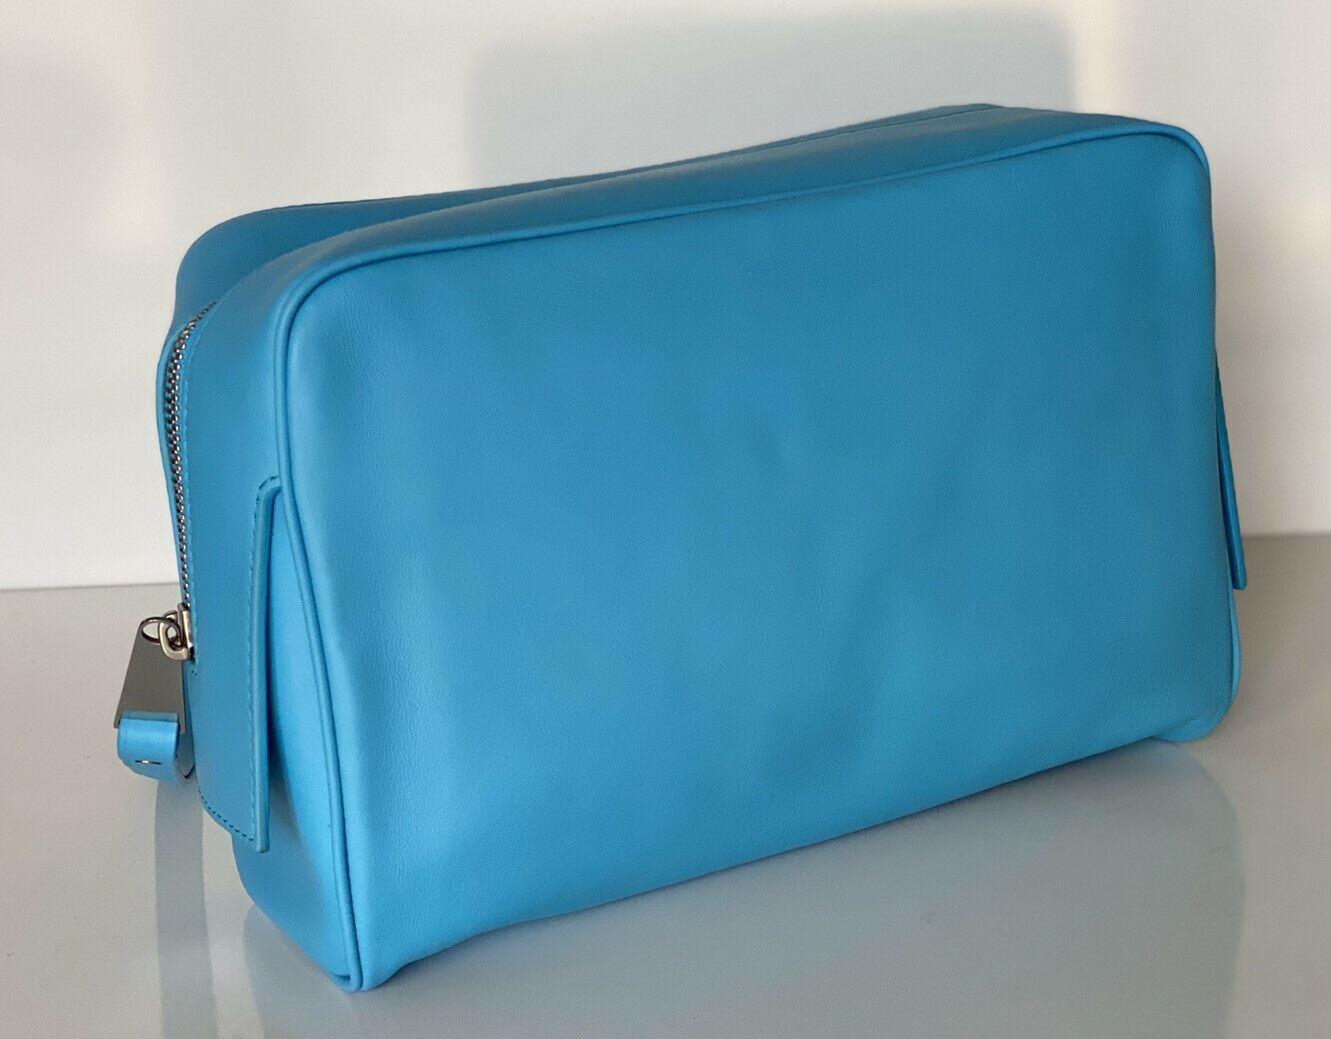 NWT $1280 Кожаный чехол для туалетных принадлежностей небесно-голубого цвета Bottega Veneta среднего размера 575555 IT 